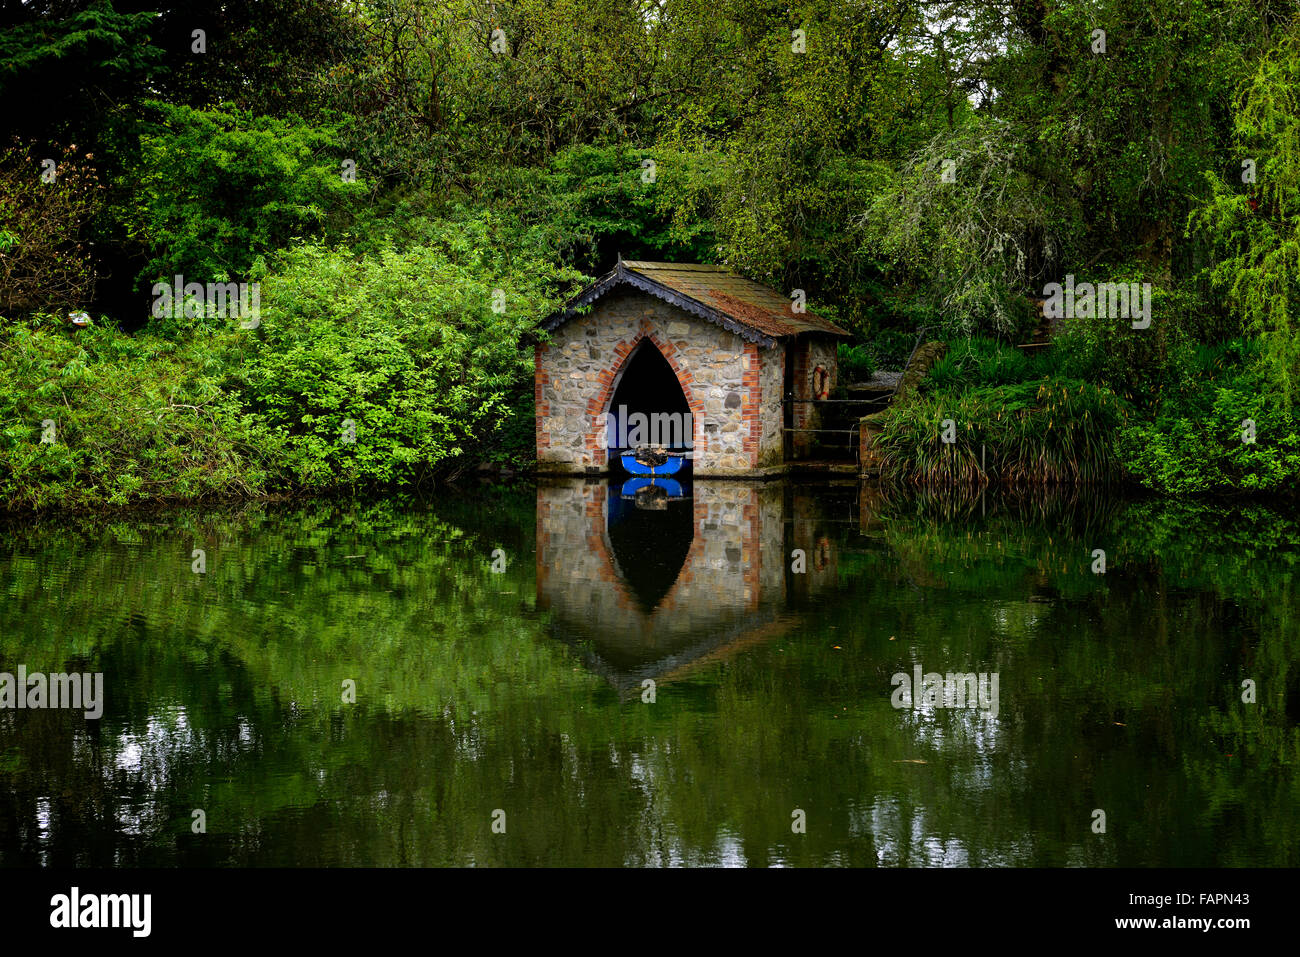 Bootshaus See Teich blaues Boot gemauerten Schuppen Gehäuse spiegeln Reflexion noch ruhigen Garten Gartenarbeit Feature RM Floral Stockfoto